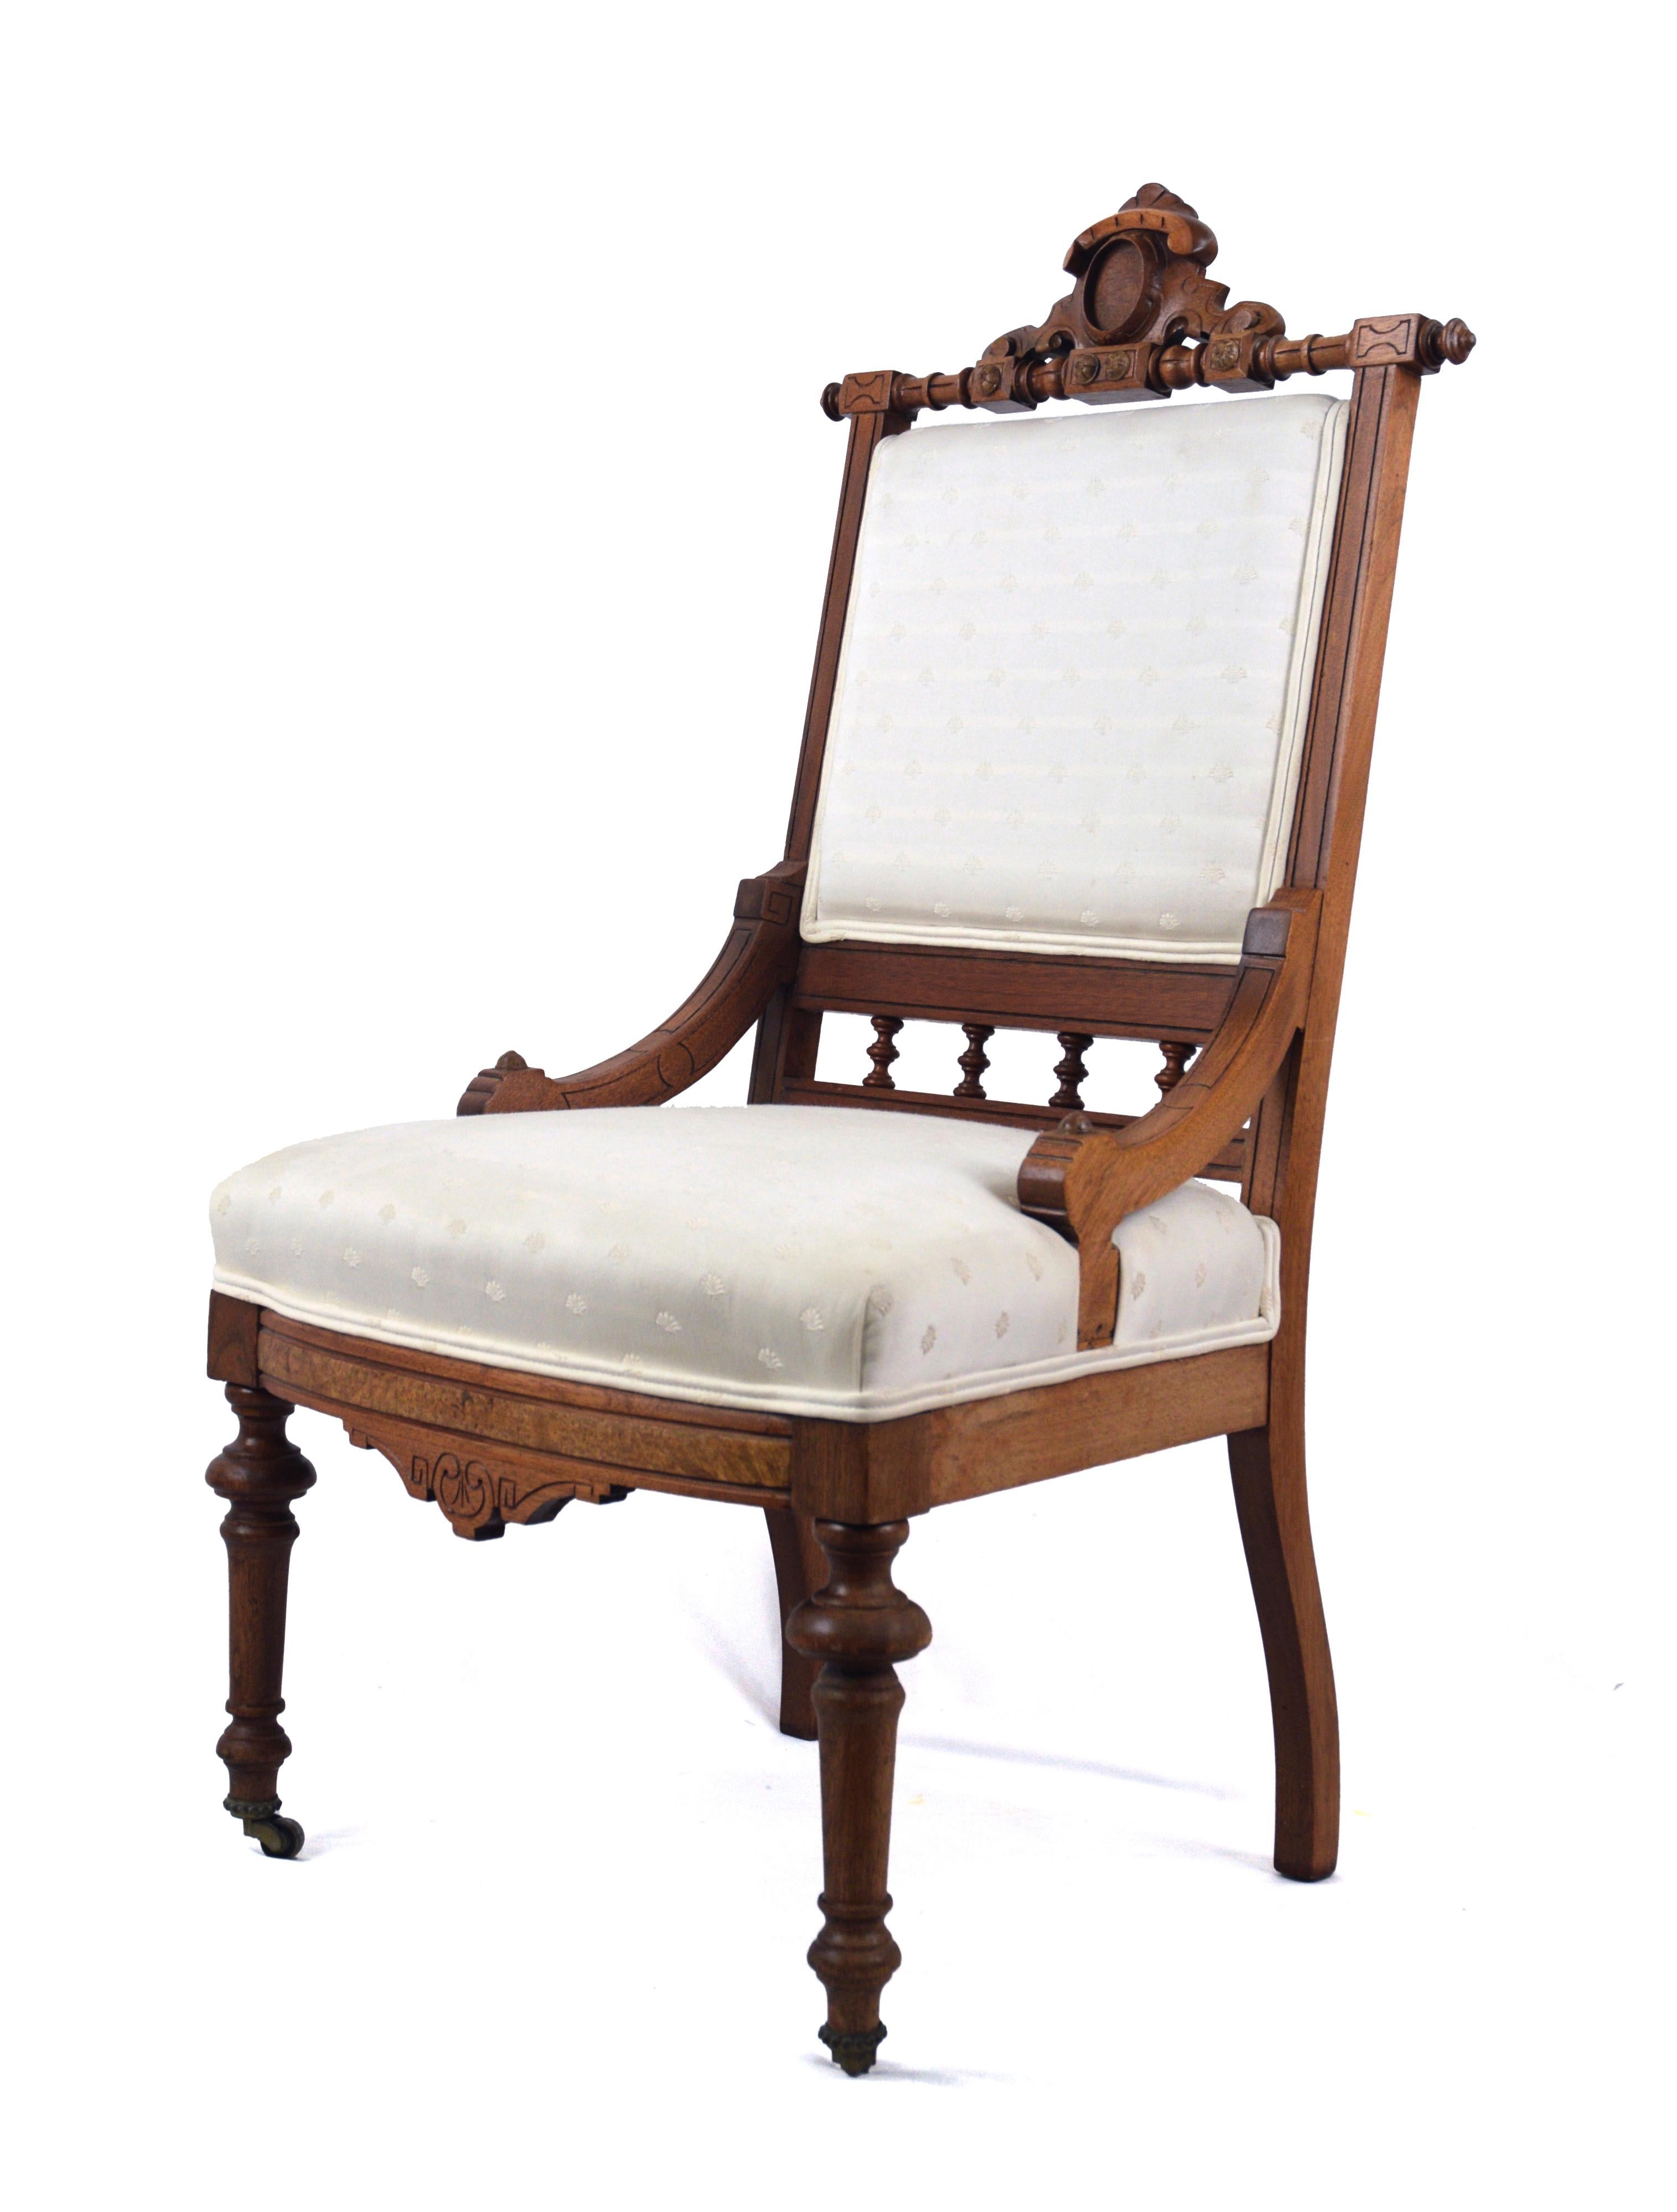 Chaise Eastlake tapissée de brocart avec roulettes

Chaise en bois sculptée à la main avec tissu en brocart blanc cassé. Le dossier et l'assise sont assortis, avec un double passepoil. Les deux pieds avant sont équipés de roues roulantes, mais les